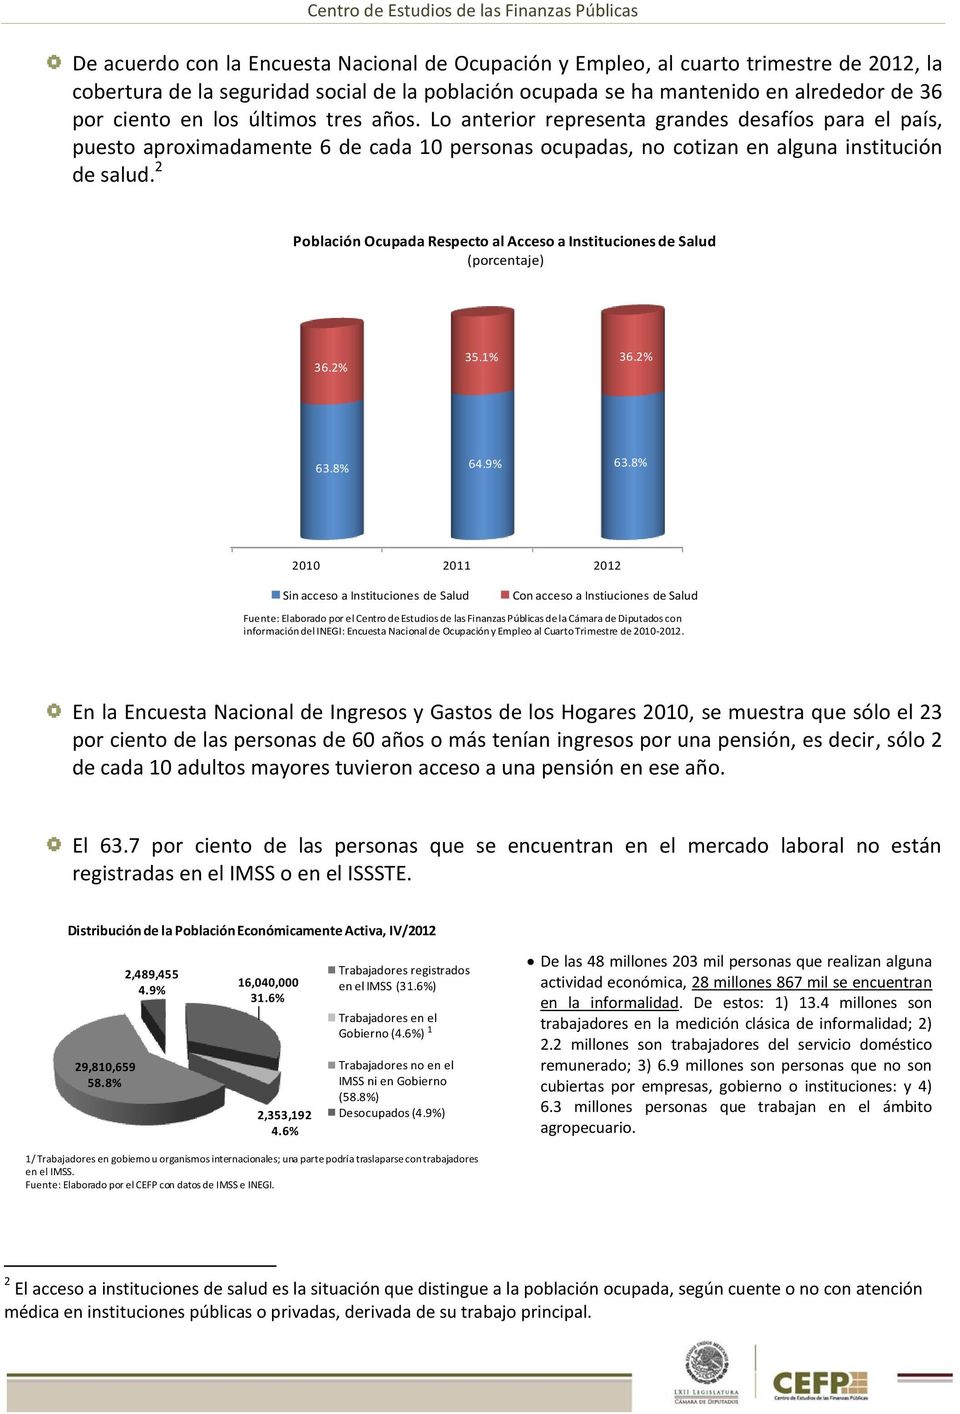 2 Población Ocupada Respecto al Acceso a Instituciones de Salud (porcentaje) 36.2% 35.1% 36.2% 63.8% 64.9% 63.